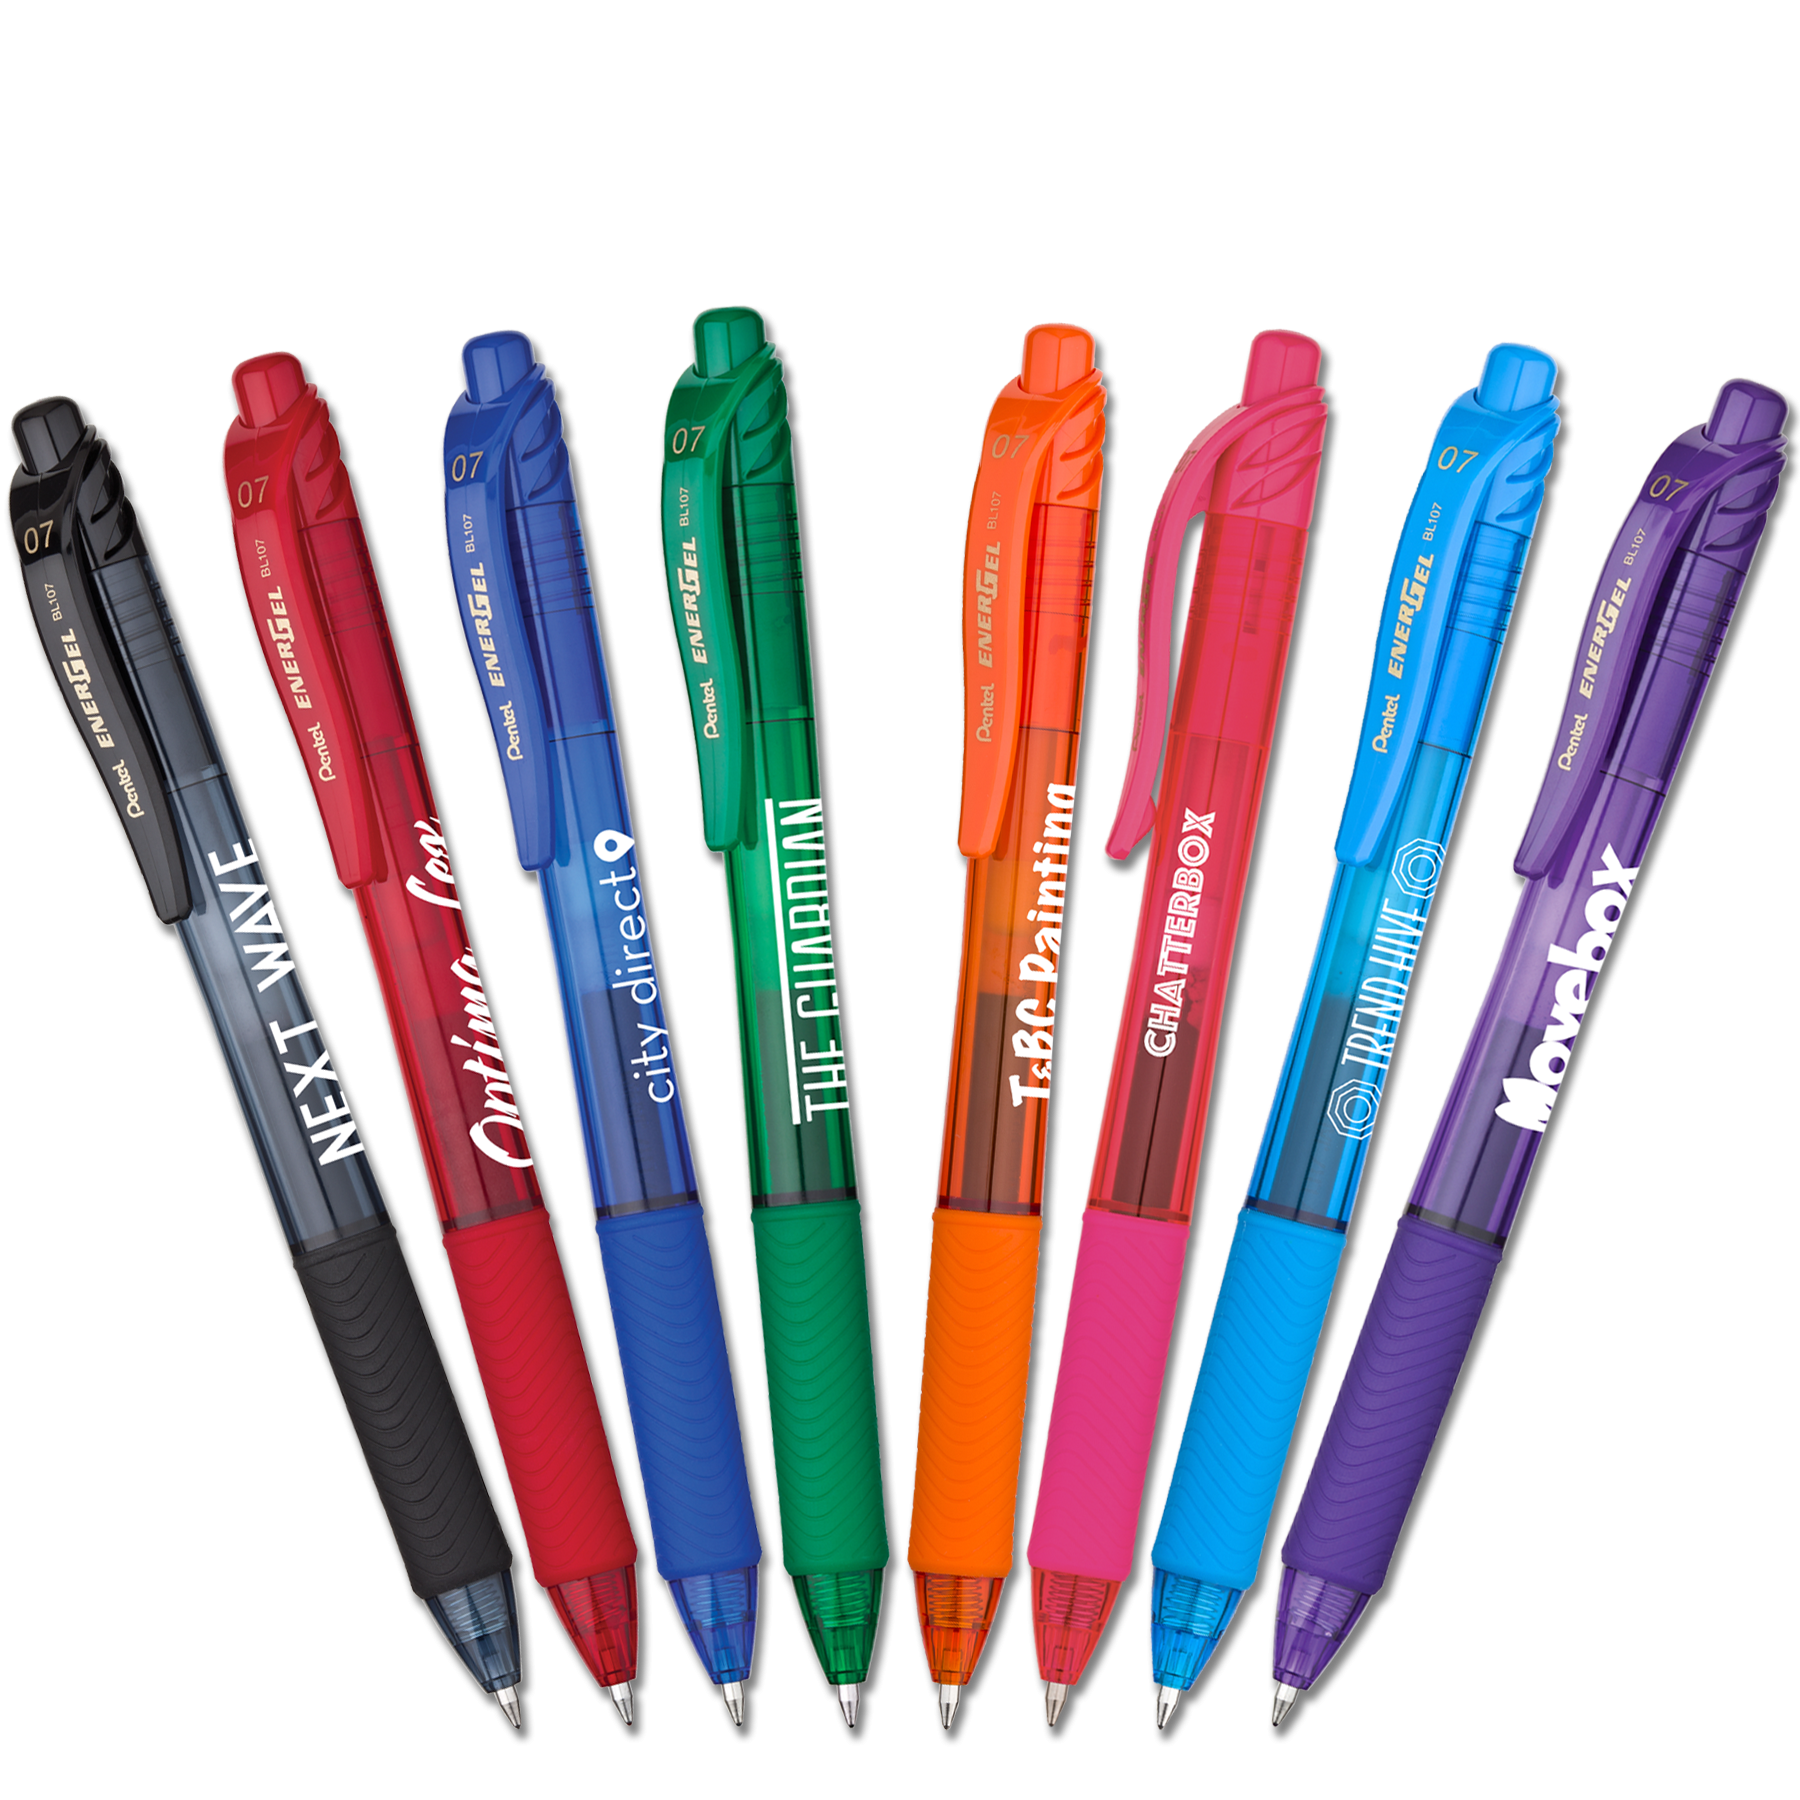 Promotional Pen-Ham (TM) Double Eraser Pencil $0.80